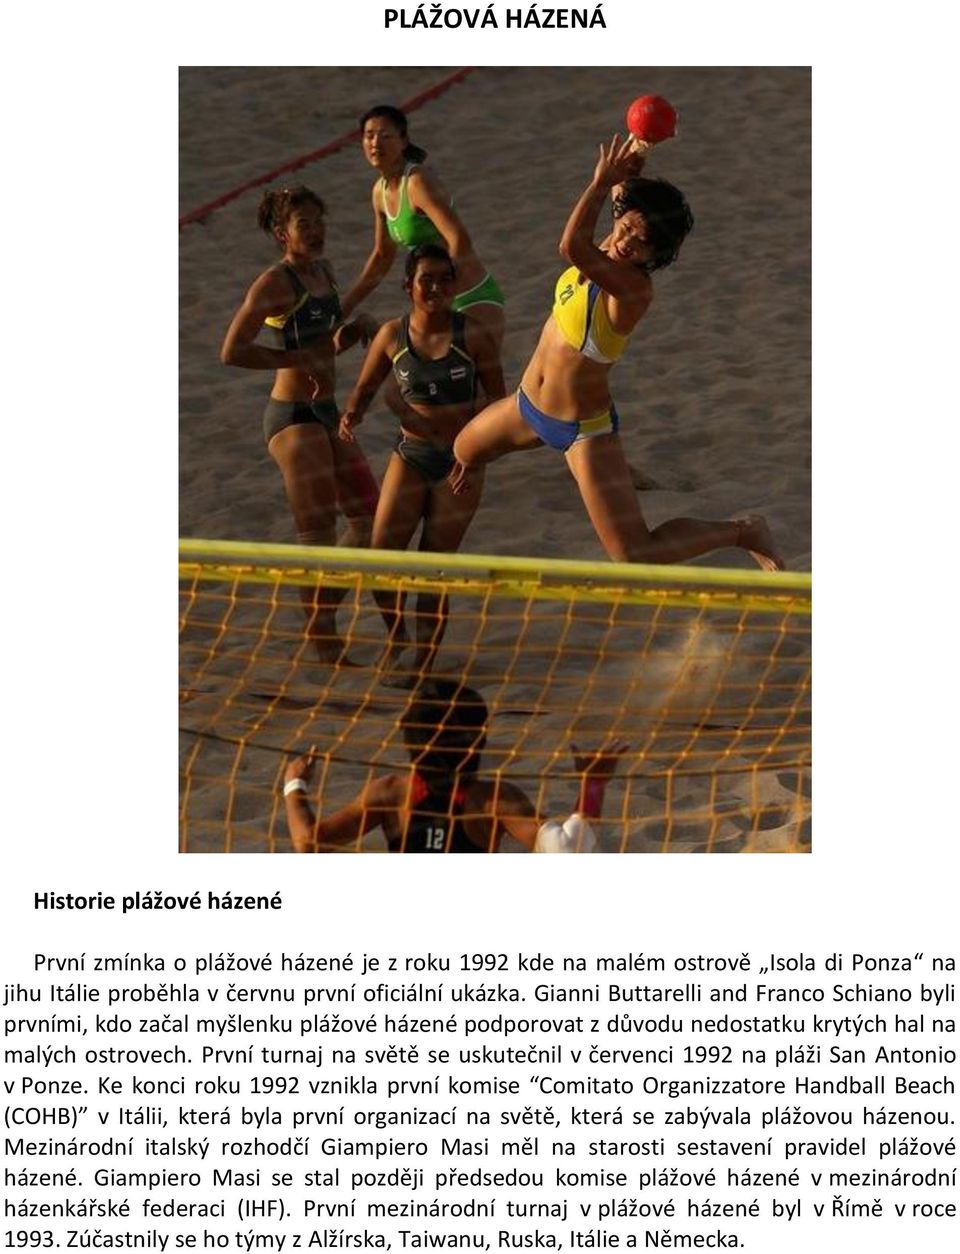 První turnaj na světě se uskutečnil v červenci 1992 na pláži San Antonio v Ponze.